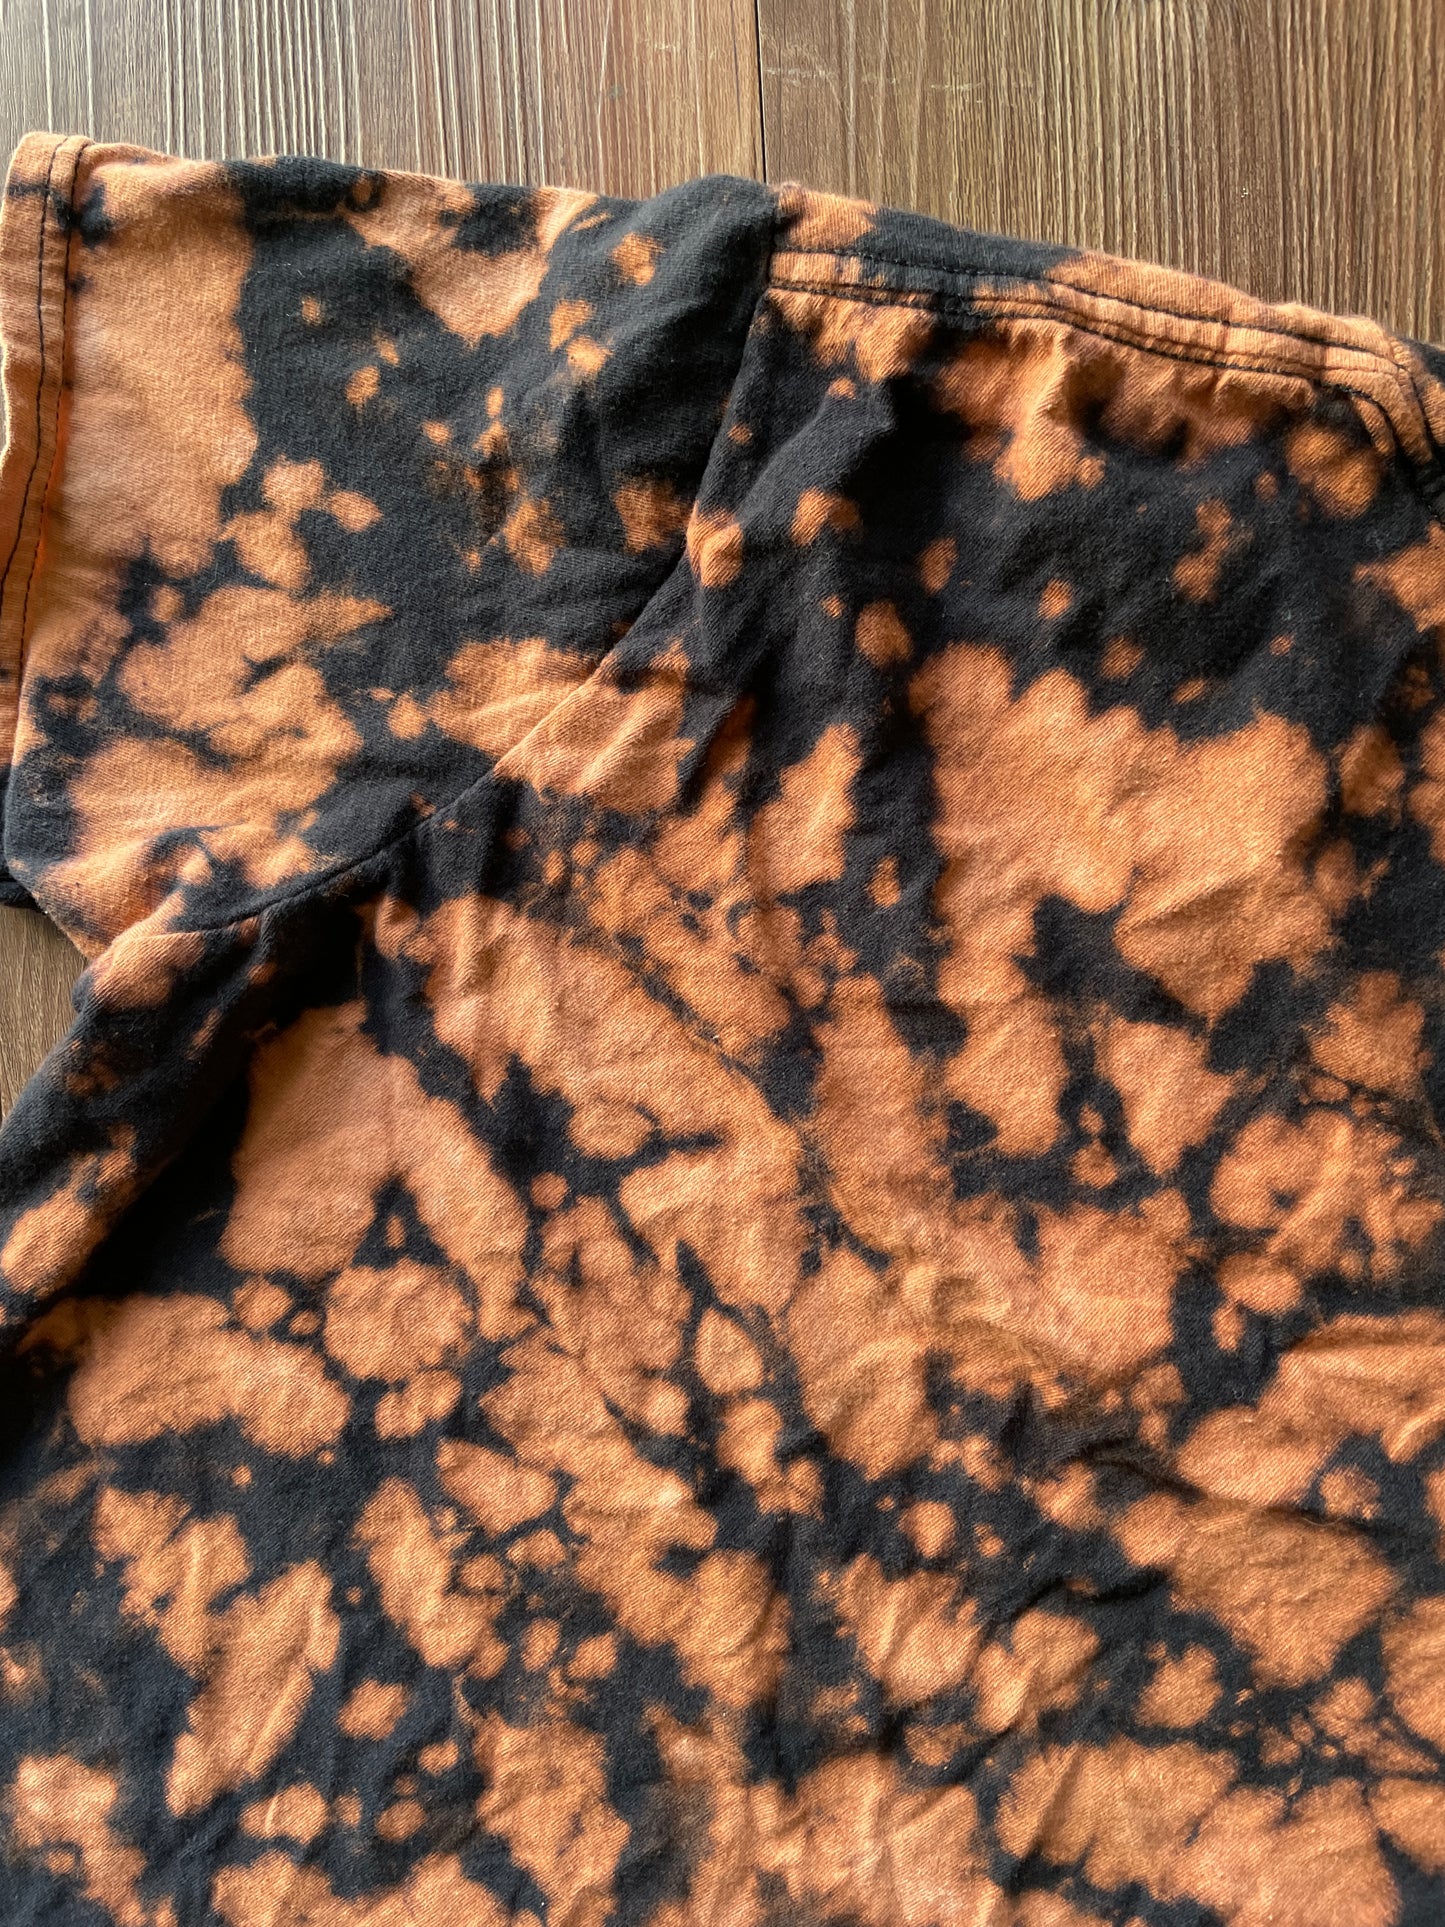 MEDIUM Women's FRIENDS Handmade Acid Dye T-Shirt | One-Of-a-Kind Bleach Dye Short Sleeve